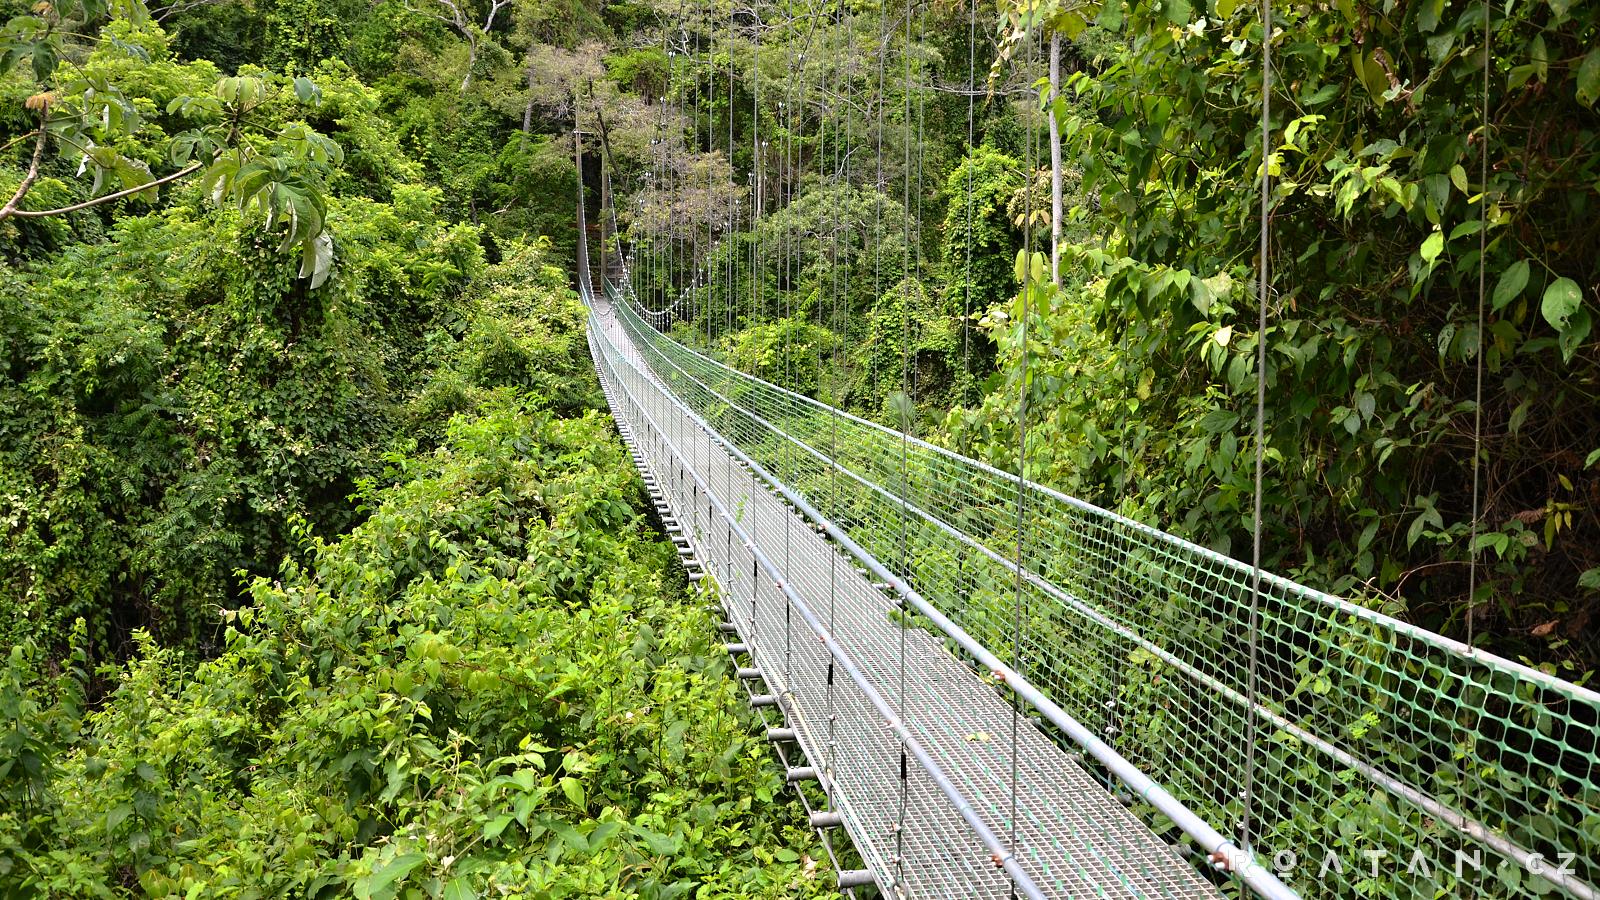 Mosty v džungli